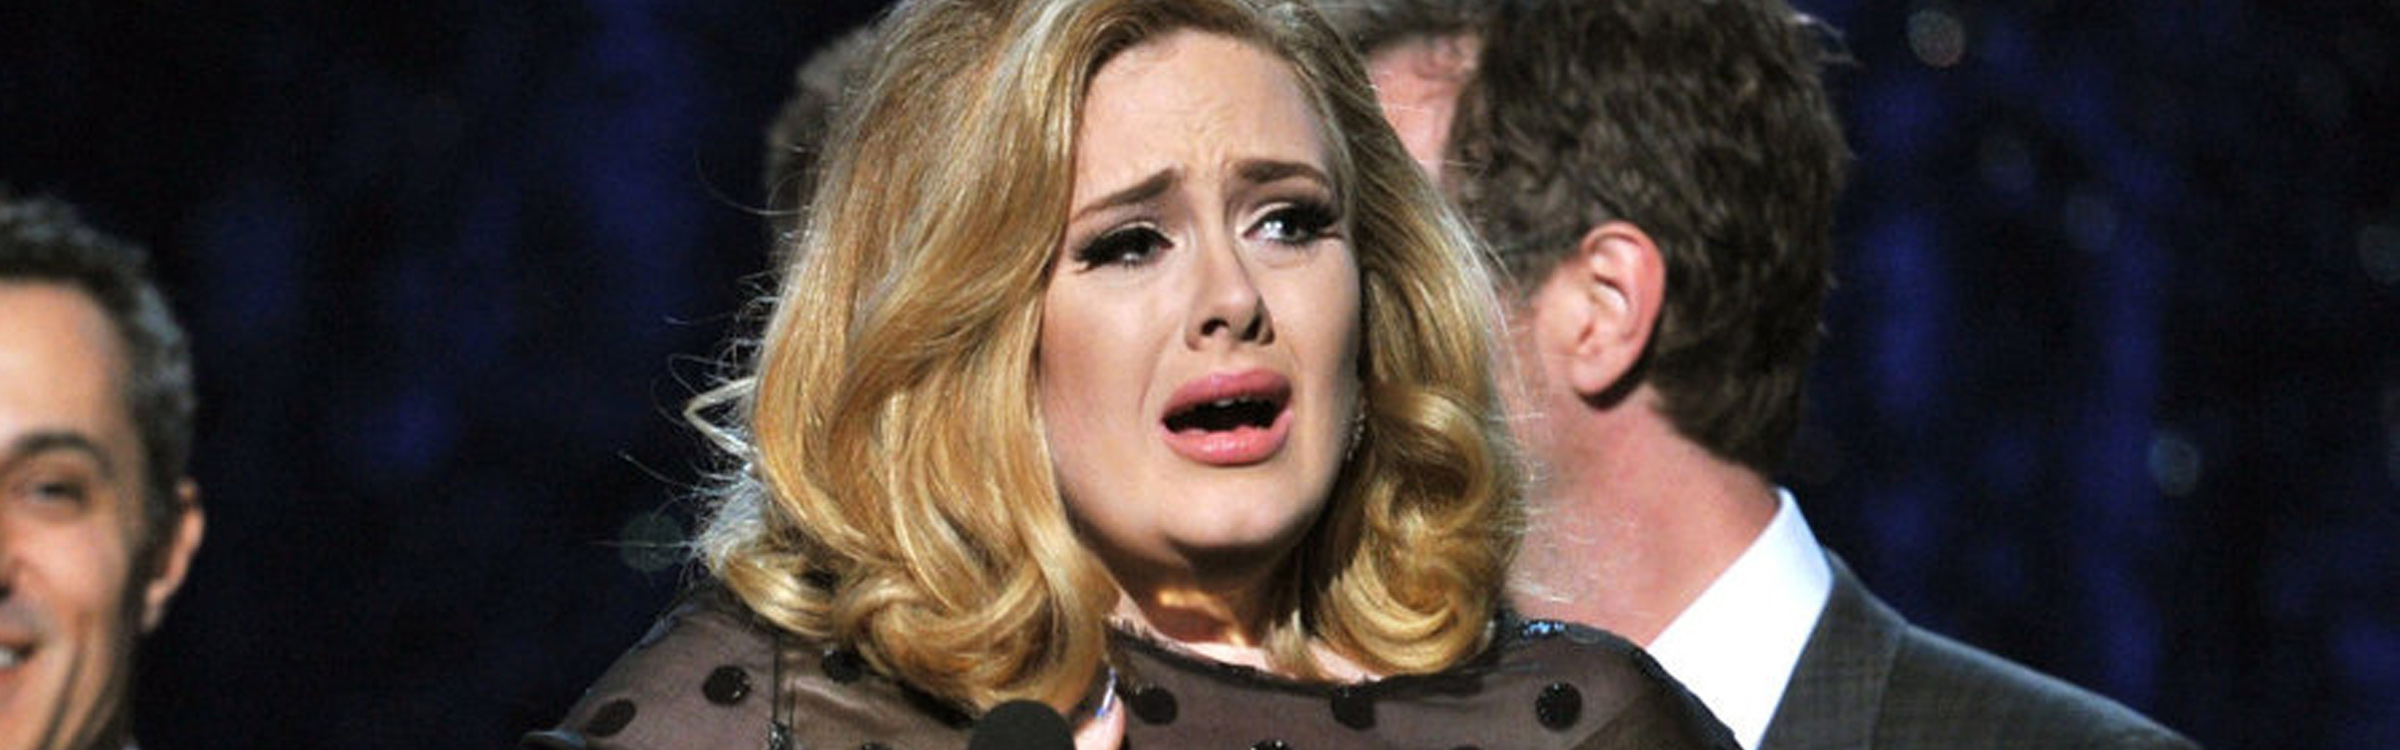 Adele brangelina header